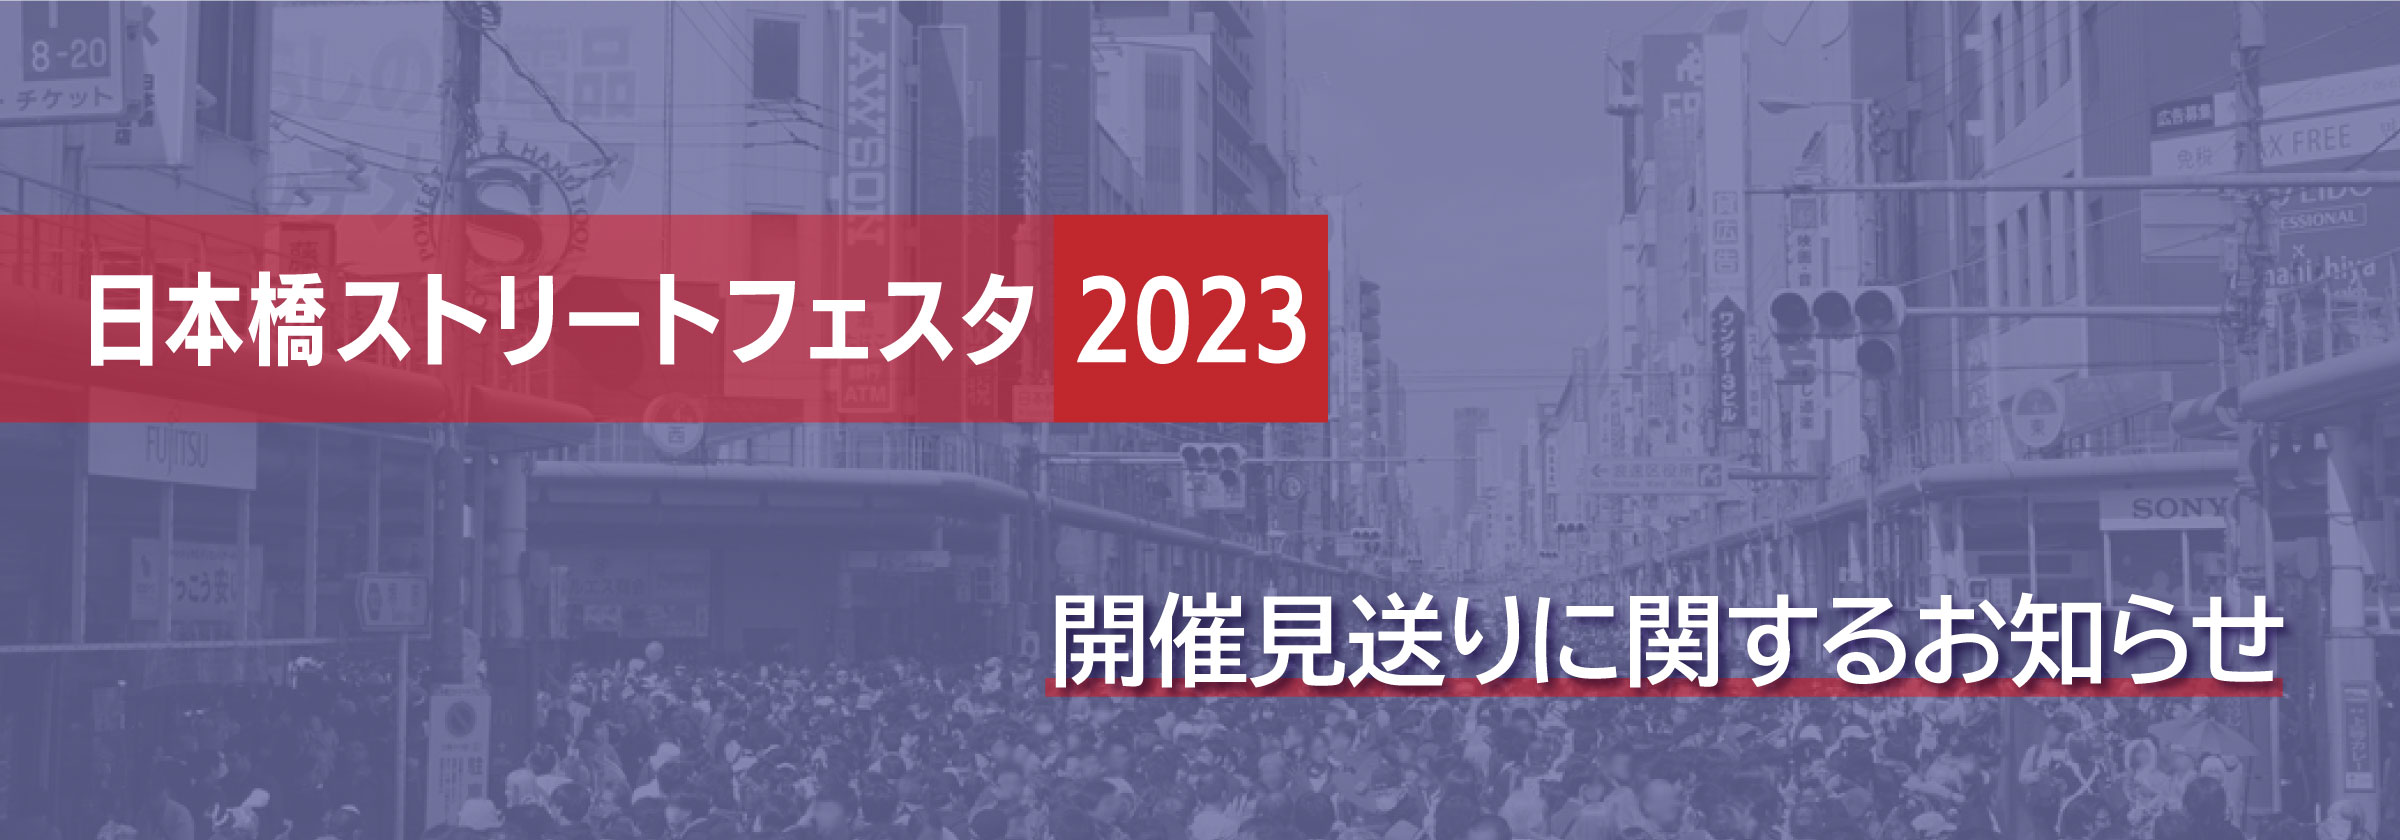 日本橋ストリートフェスタ2023 開催見送りに関するお知らせ